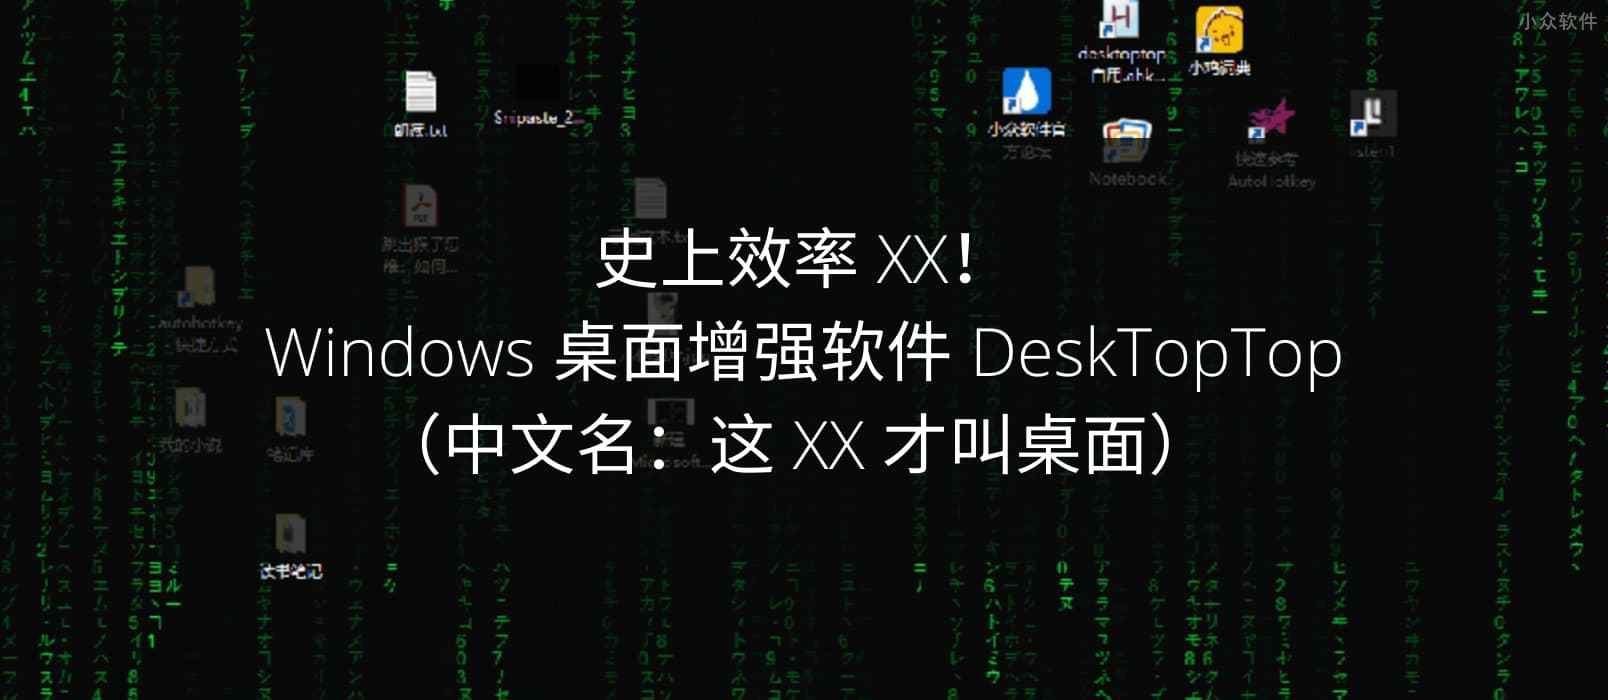 史上效率 XX！Windows 桌面增强软件 DeskTopTop（中文名：这 XX 才叫桌面） 